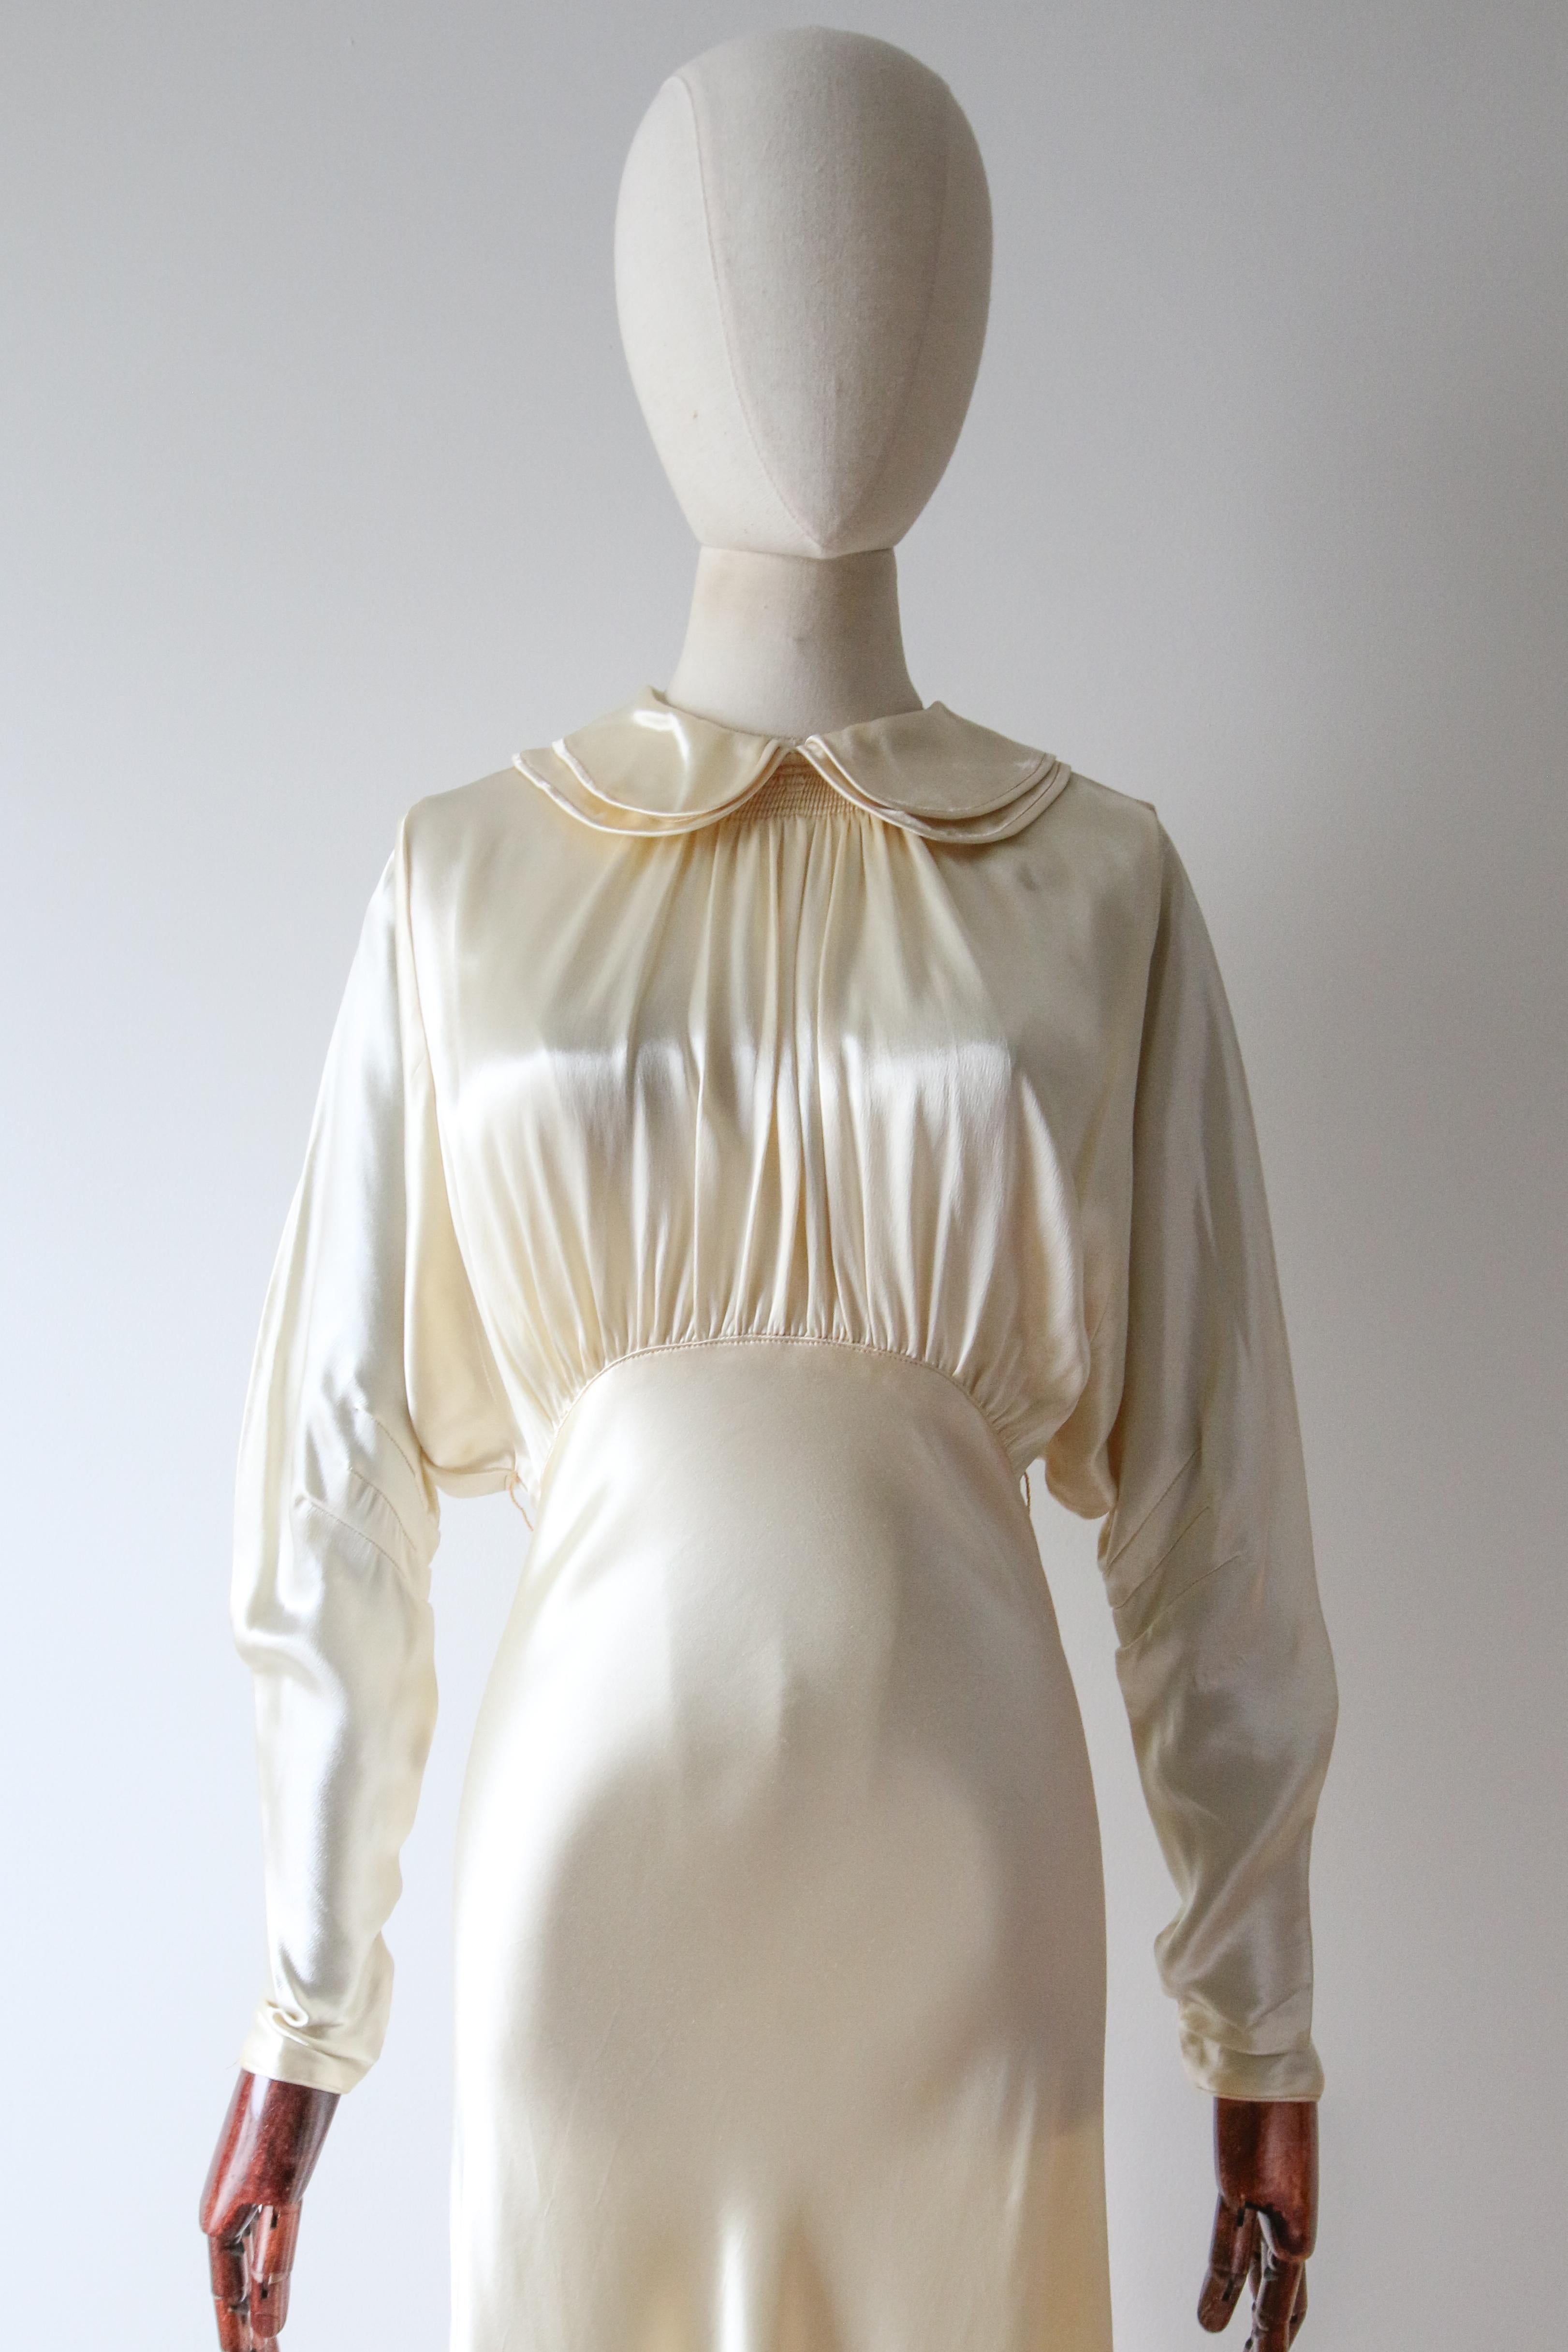 Réalisée dans un incroyable satin crème et dotée de délicats boutons en strass argenté, cette magnifique robe à coupe en biais des années 1930 est un véritable morceau d'histoire de la mode. 

L'encolure arrondie est encadrée par un doux col Peters